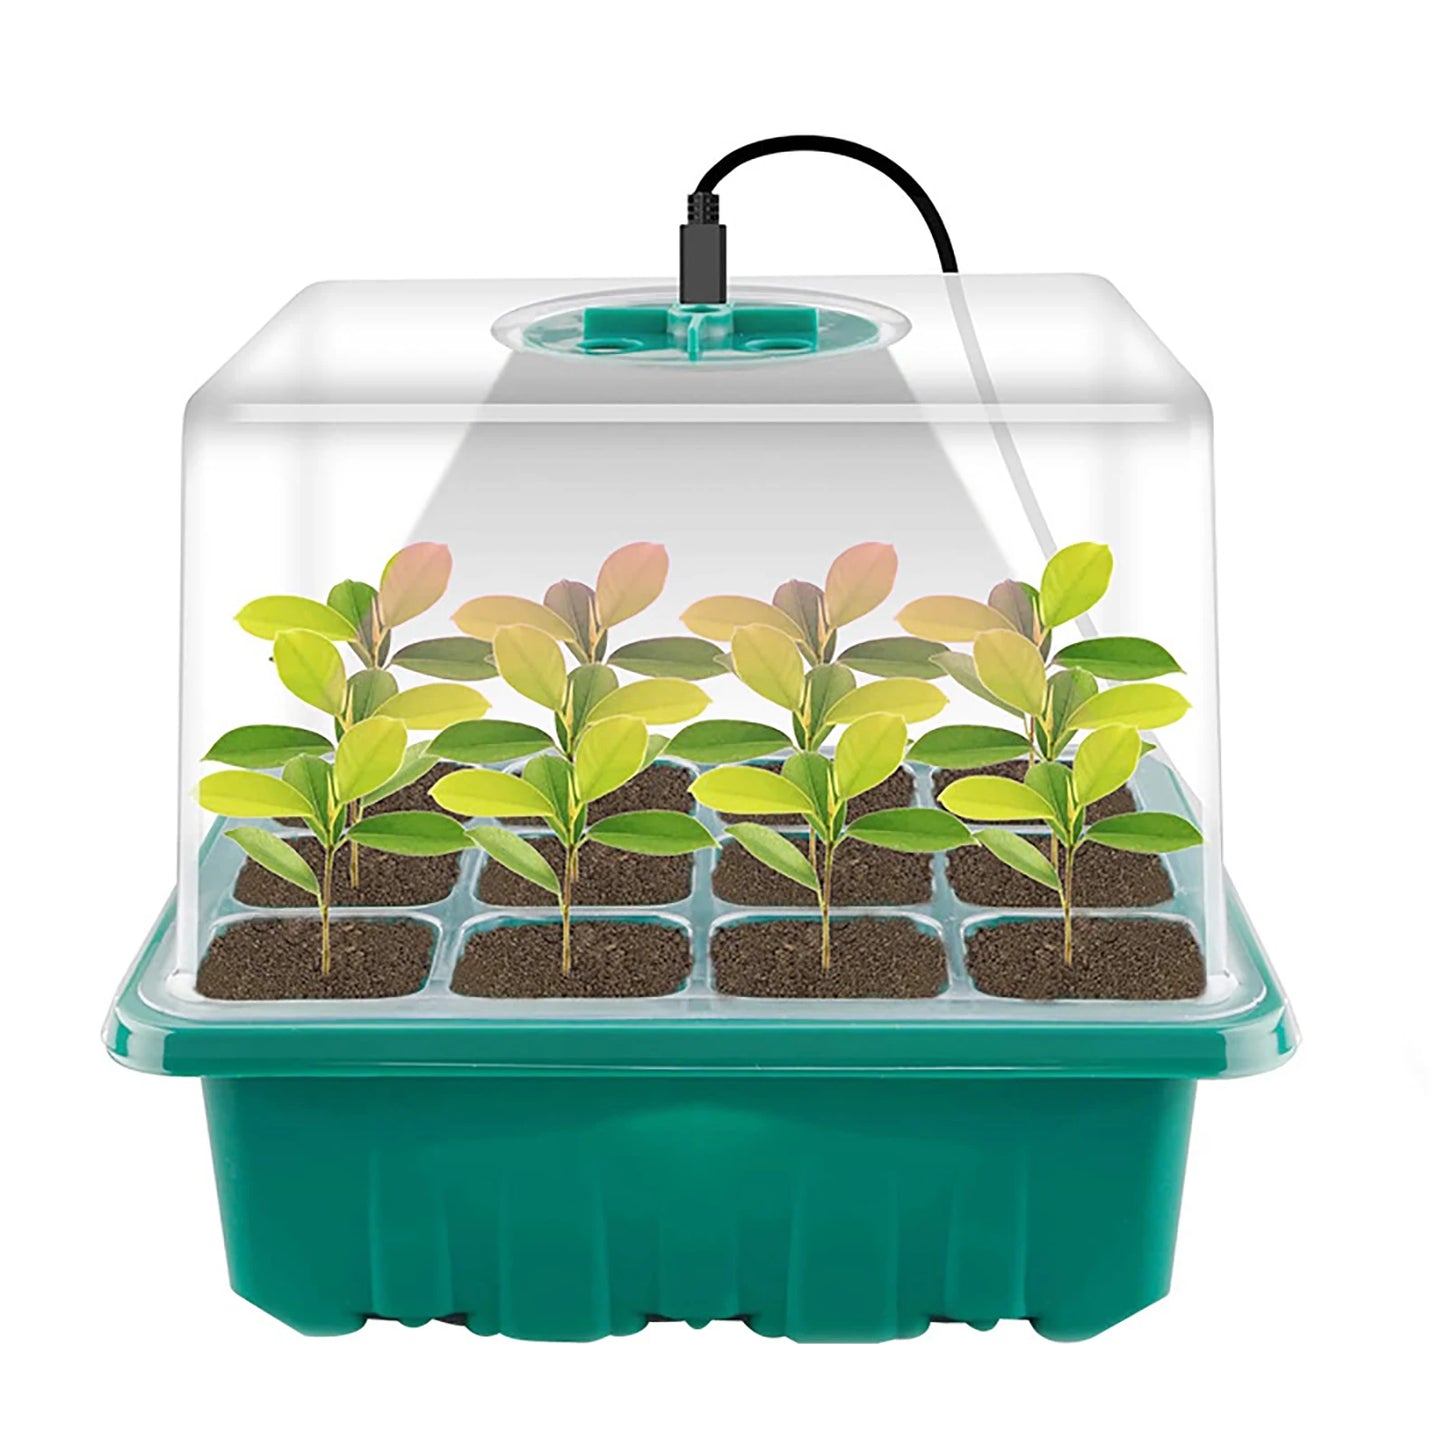 LED Grow Light 6/12 reikien siementen aloituslaitteiden kasvi kasvavat laatikon taimipaikat itäminen sisätilojen puutarhanhoitotyökalu